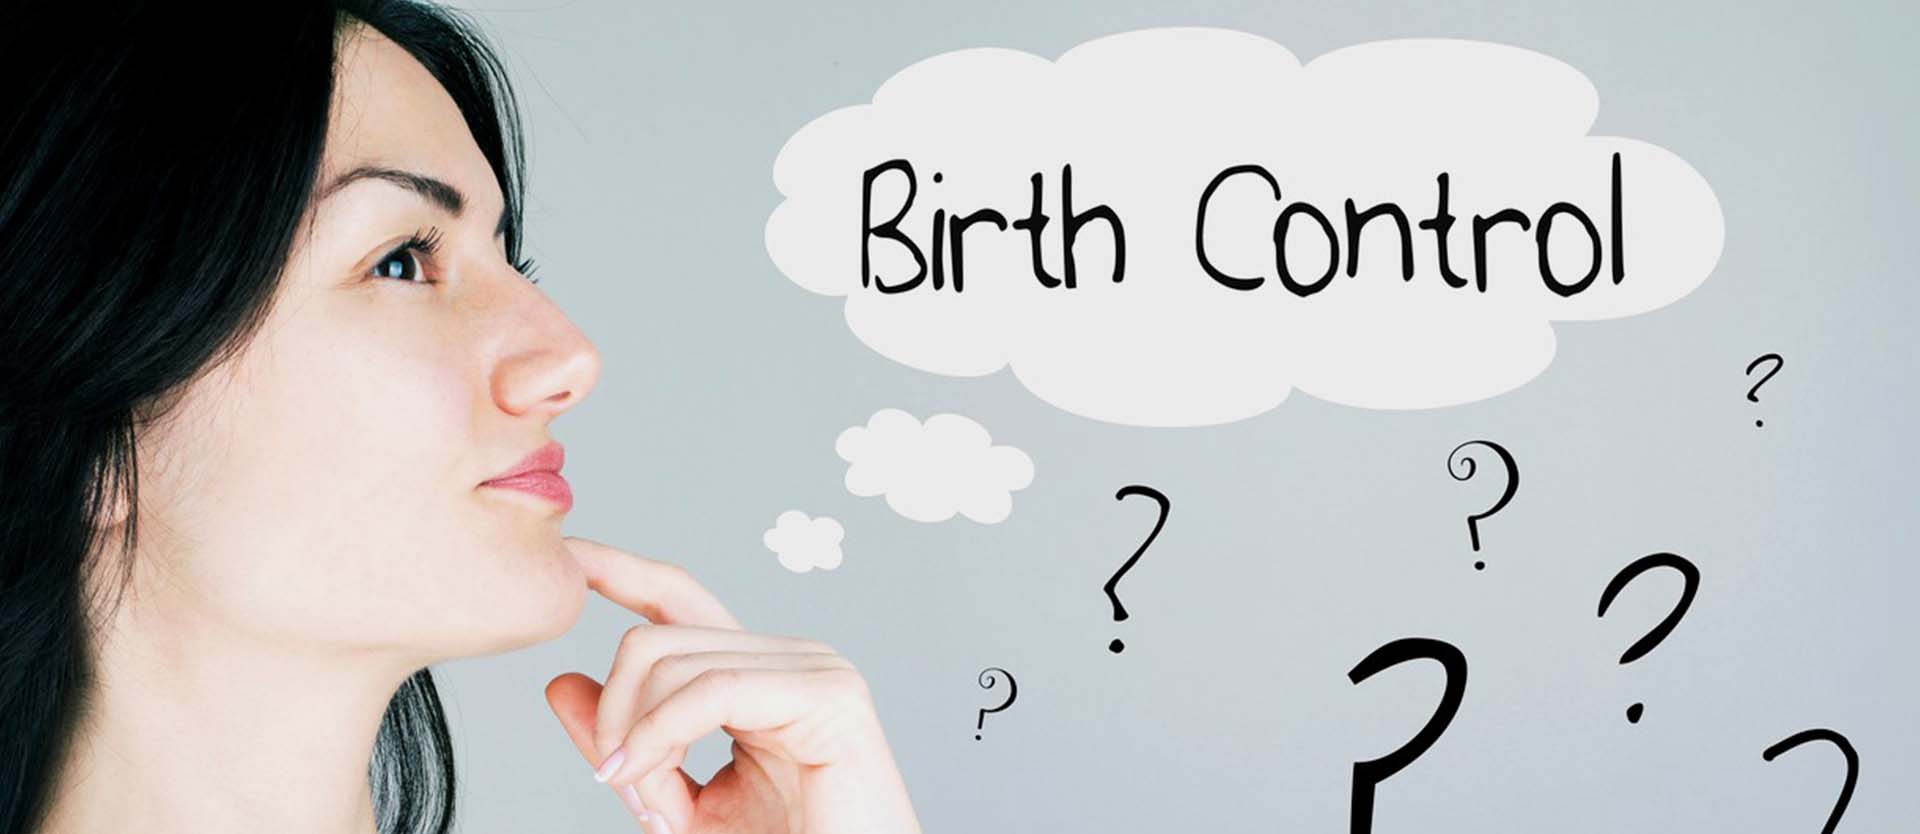 Can Birth Control Cause Hair Loss?